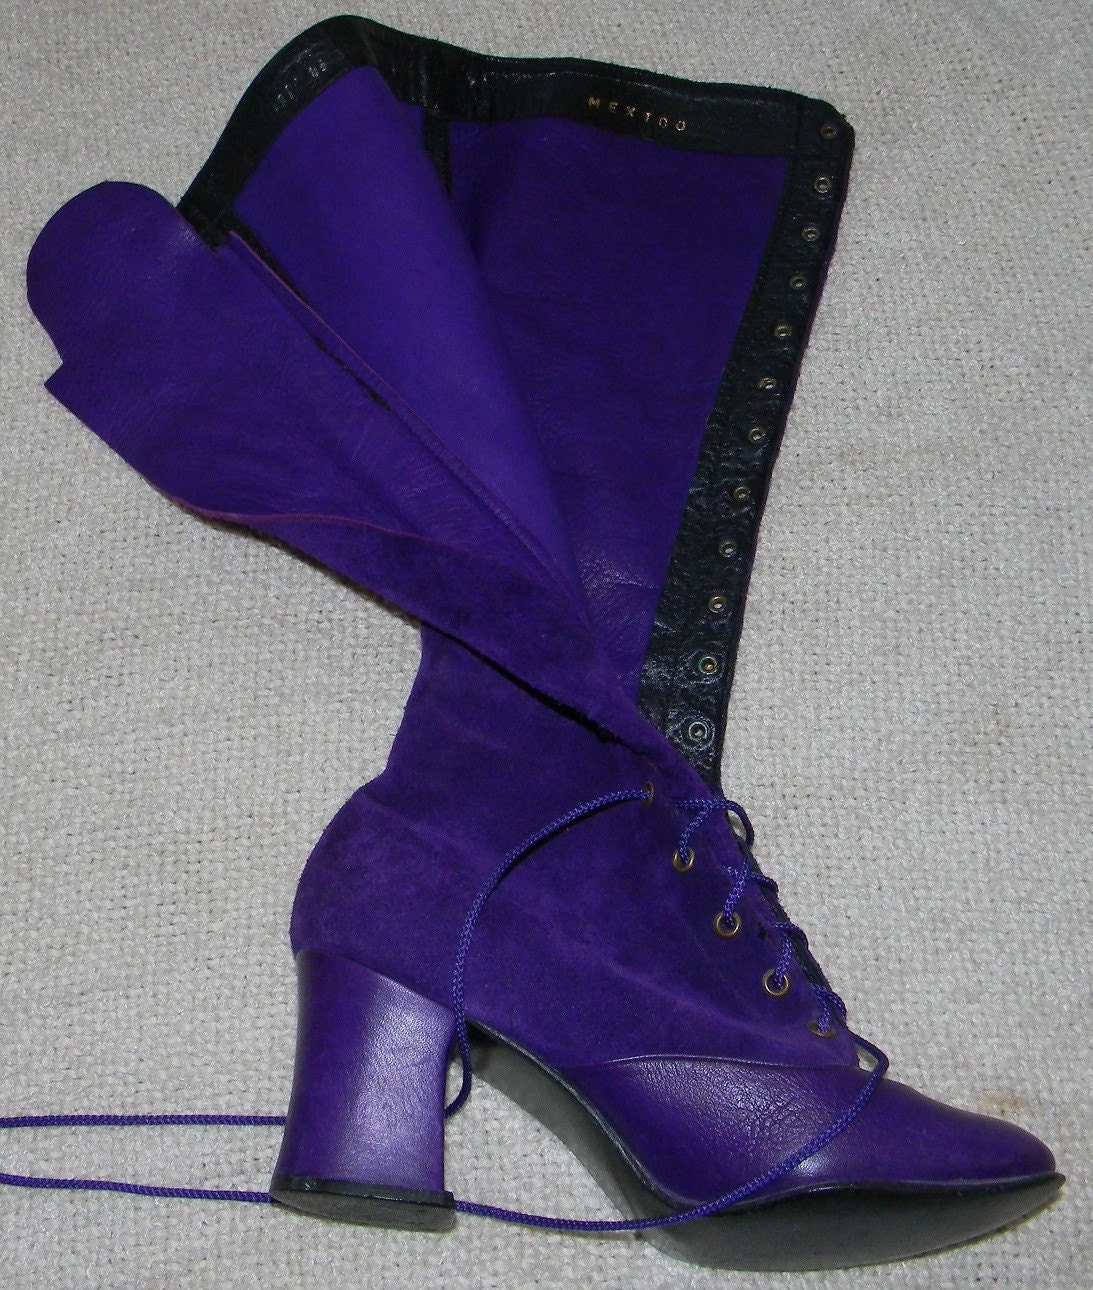 SALE sz 5.5 60s purple suede lace up go go boots